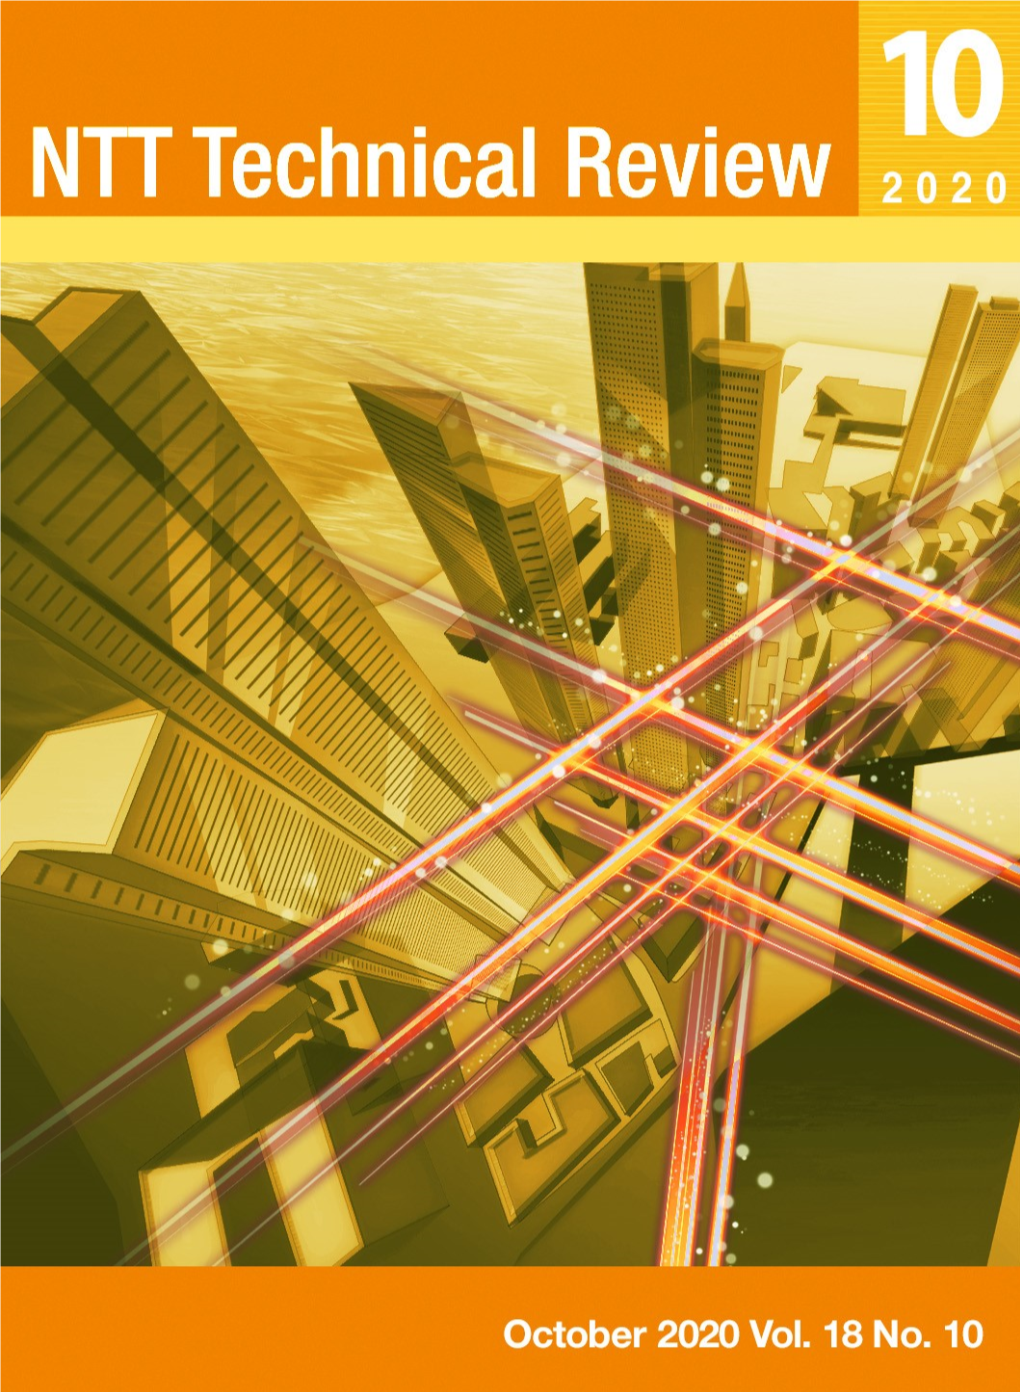 NTT Technical Review, Vol. 18, No. 10, Oct 2020